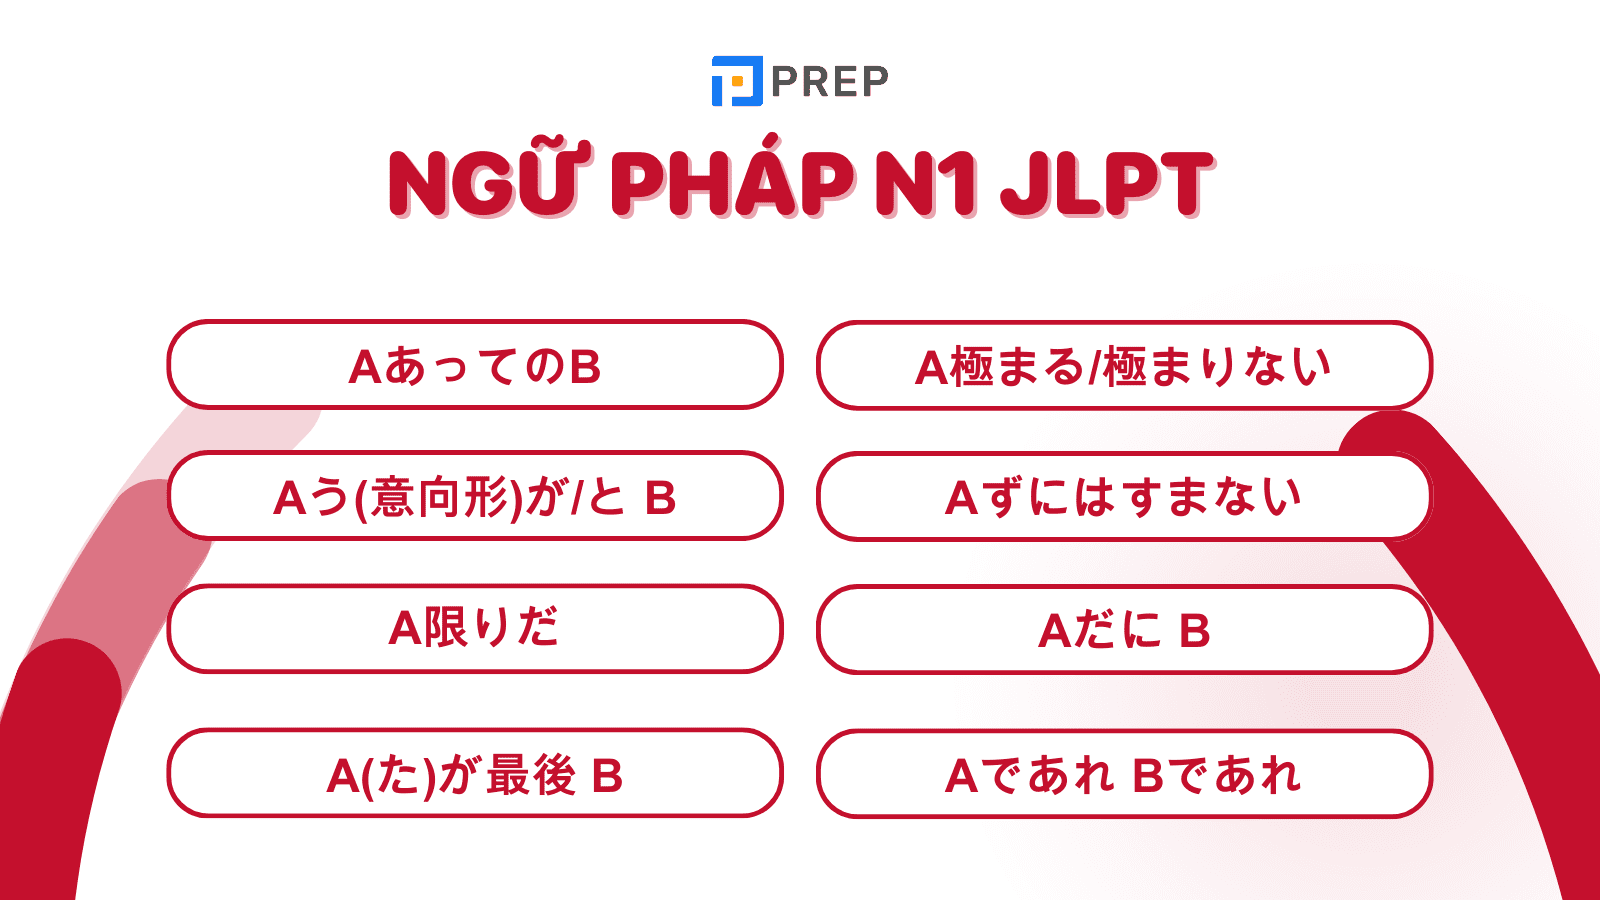 Tổng hợp 99 mẫu ngữ pháp N1 JLPT tiếng Nhật thông dụng